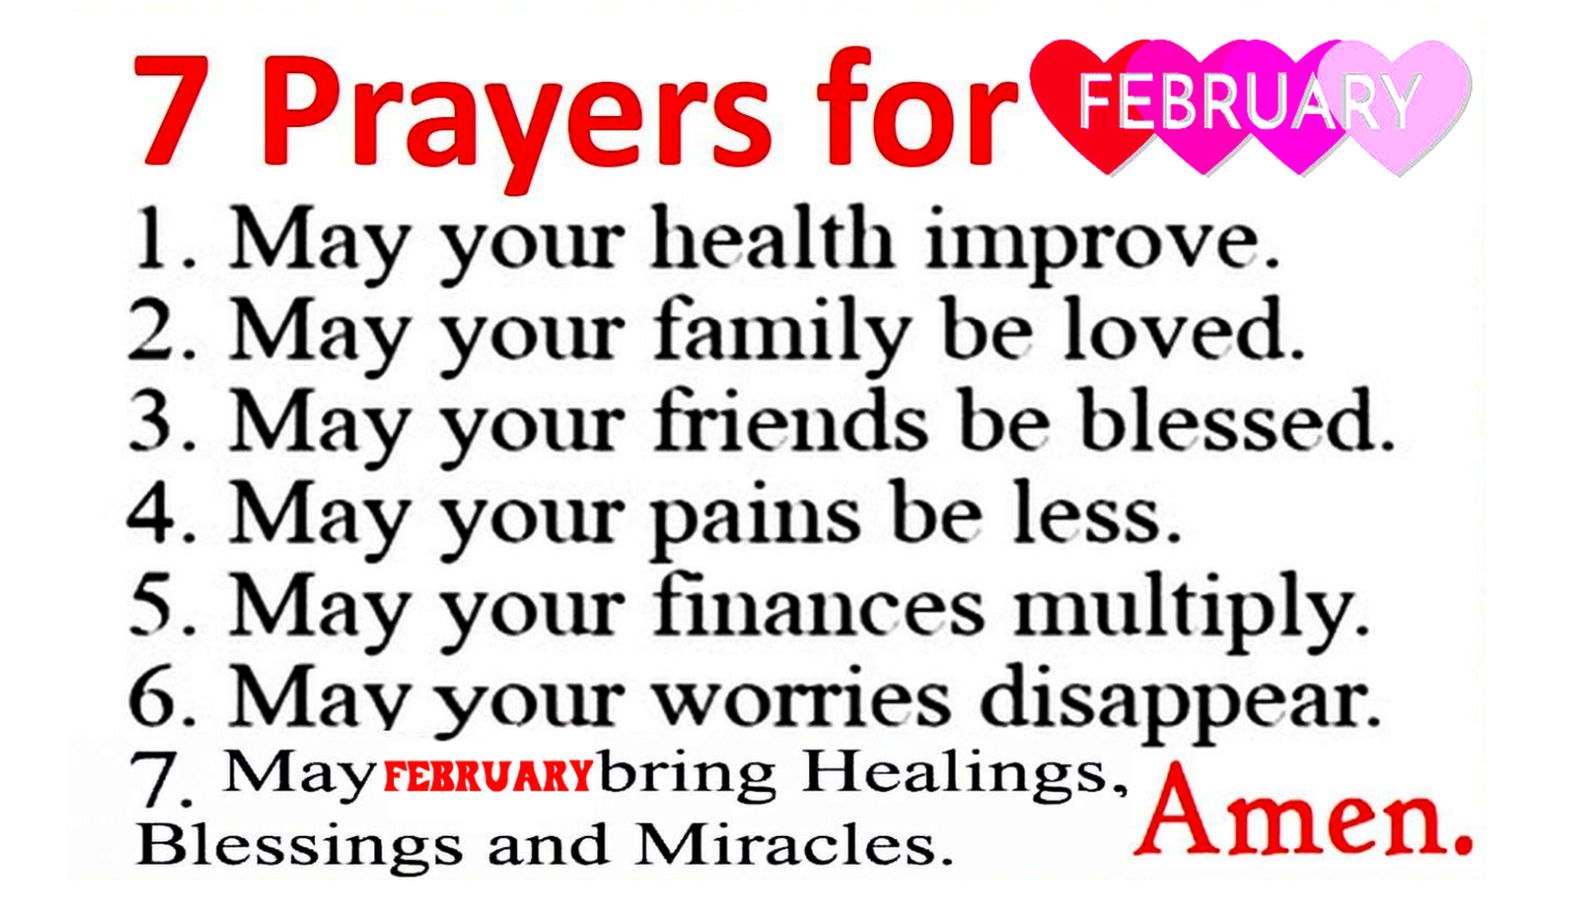 7 Prayers for FEBRUARY